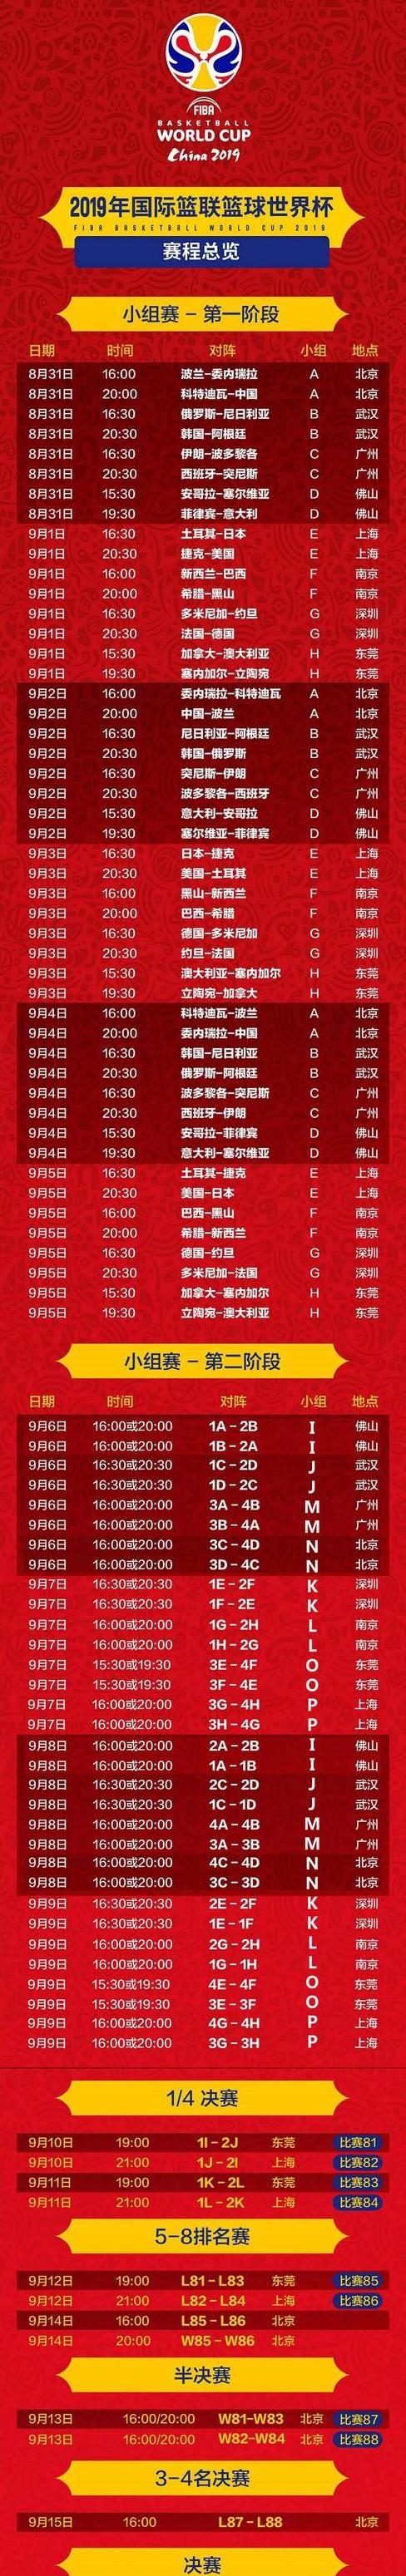 中国男篮u19世界杯赛程哪里有直播 (图1)